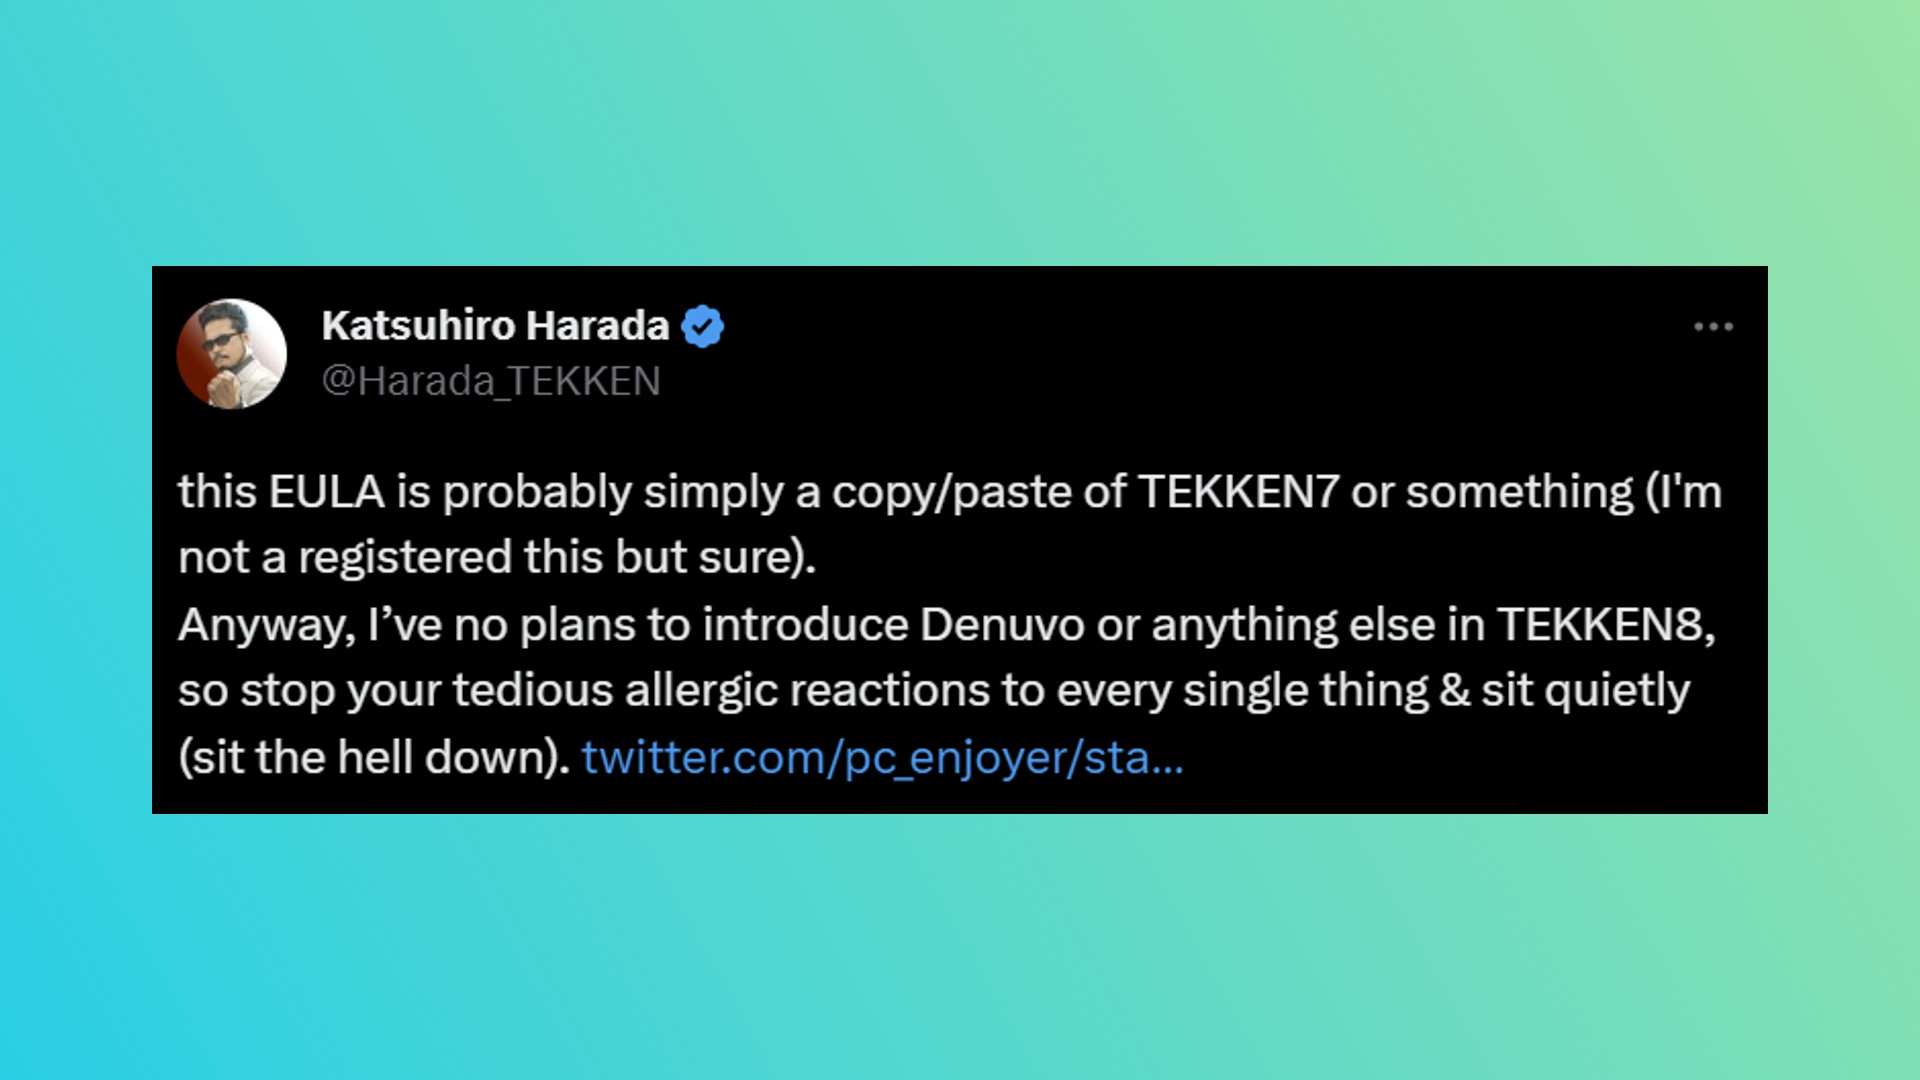 Tekken 8 Denuvo: Ein Tweet vom Regisseur des Bandia Namco-Kampfspiels Tekken 8